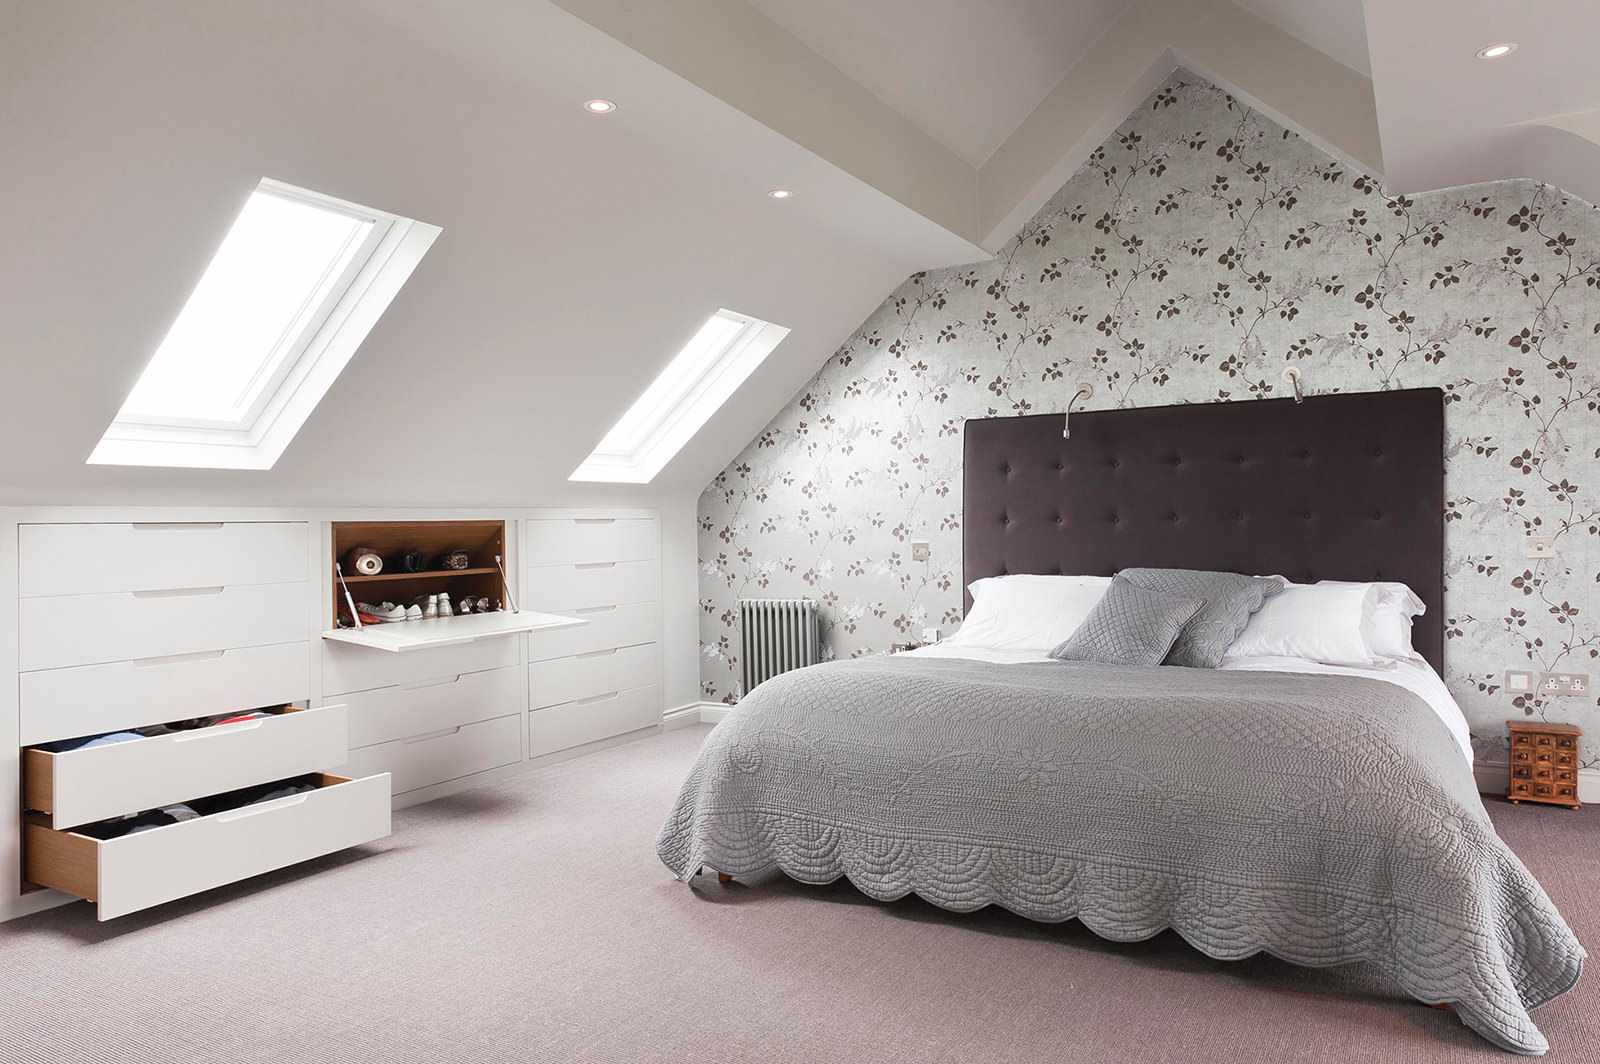 một ví dụ về trang trí đẹp của một phòng ngủ trên gác mái